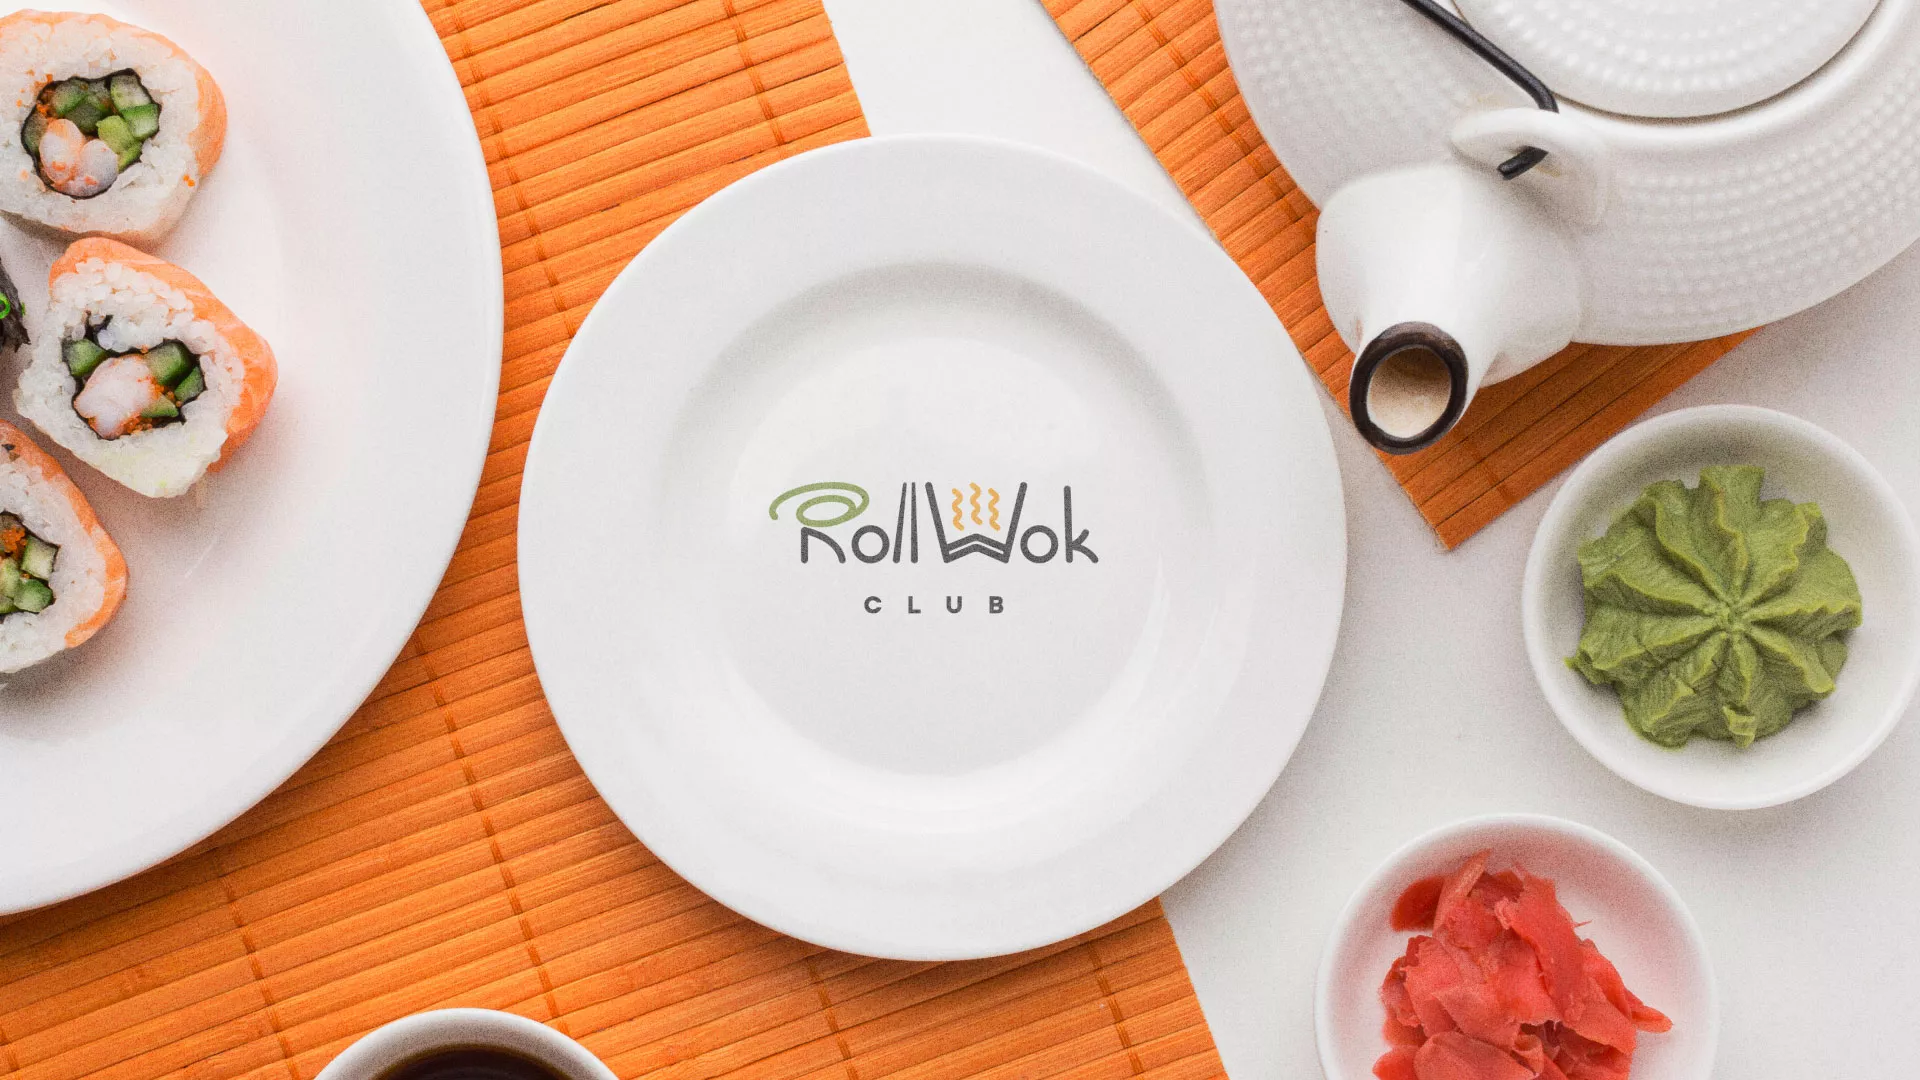 Разработка логотипа и фирменного стиля суши-бара «Roll Wok Club» в Благодарном